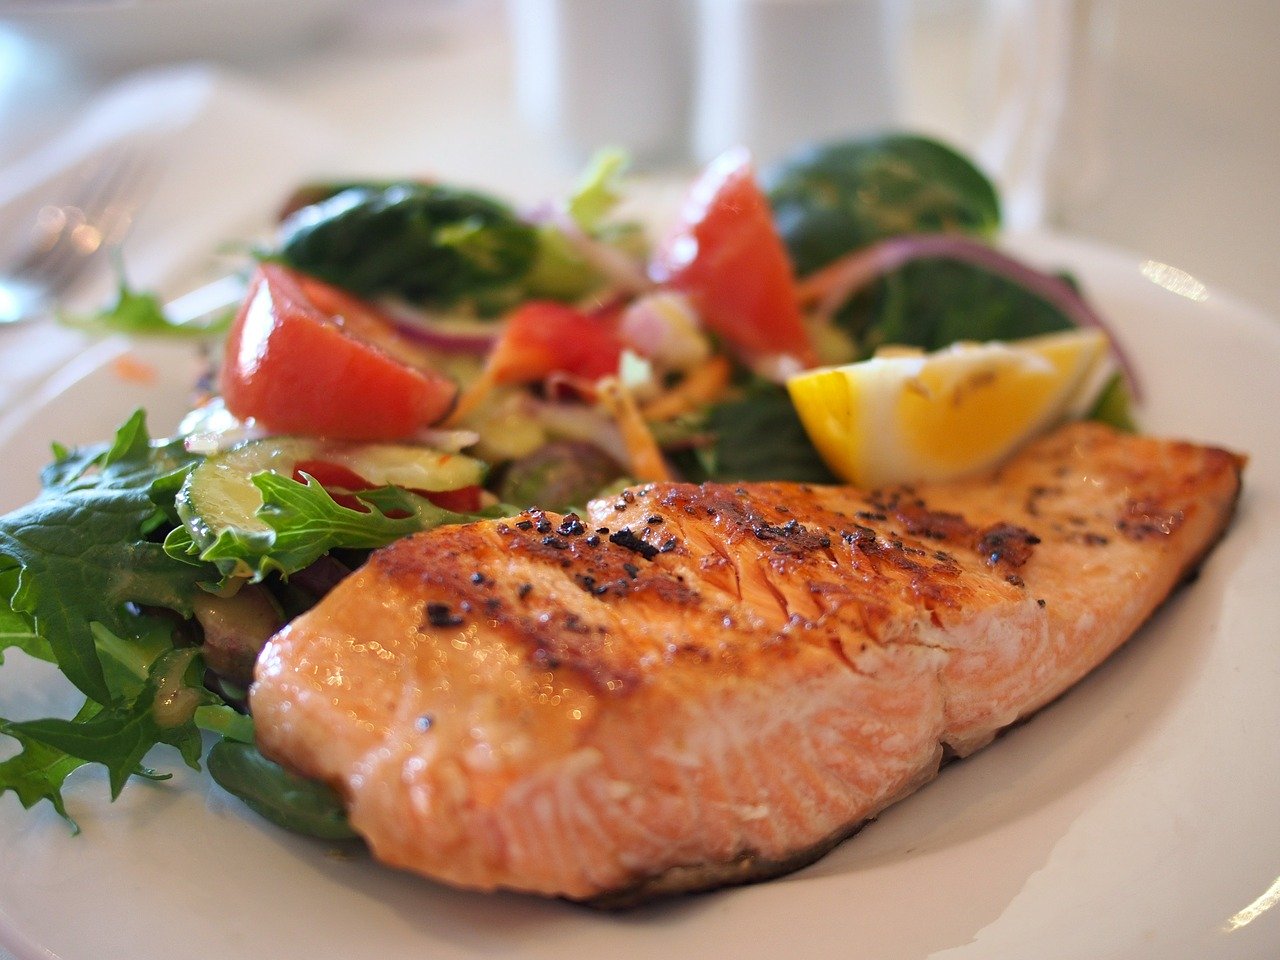 La comida saludable representa un lujo para gran parte de la población. Foto: Pixabay